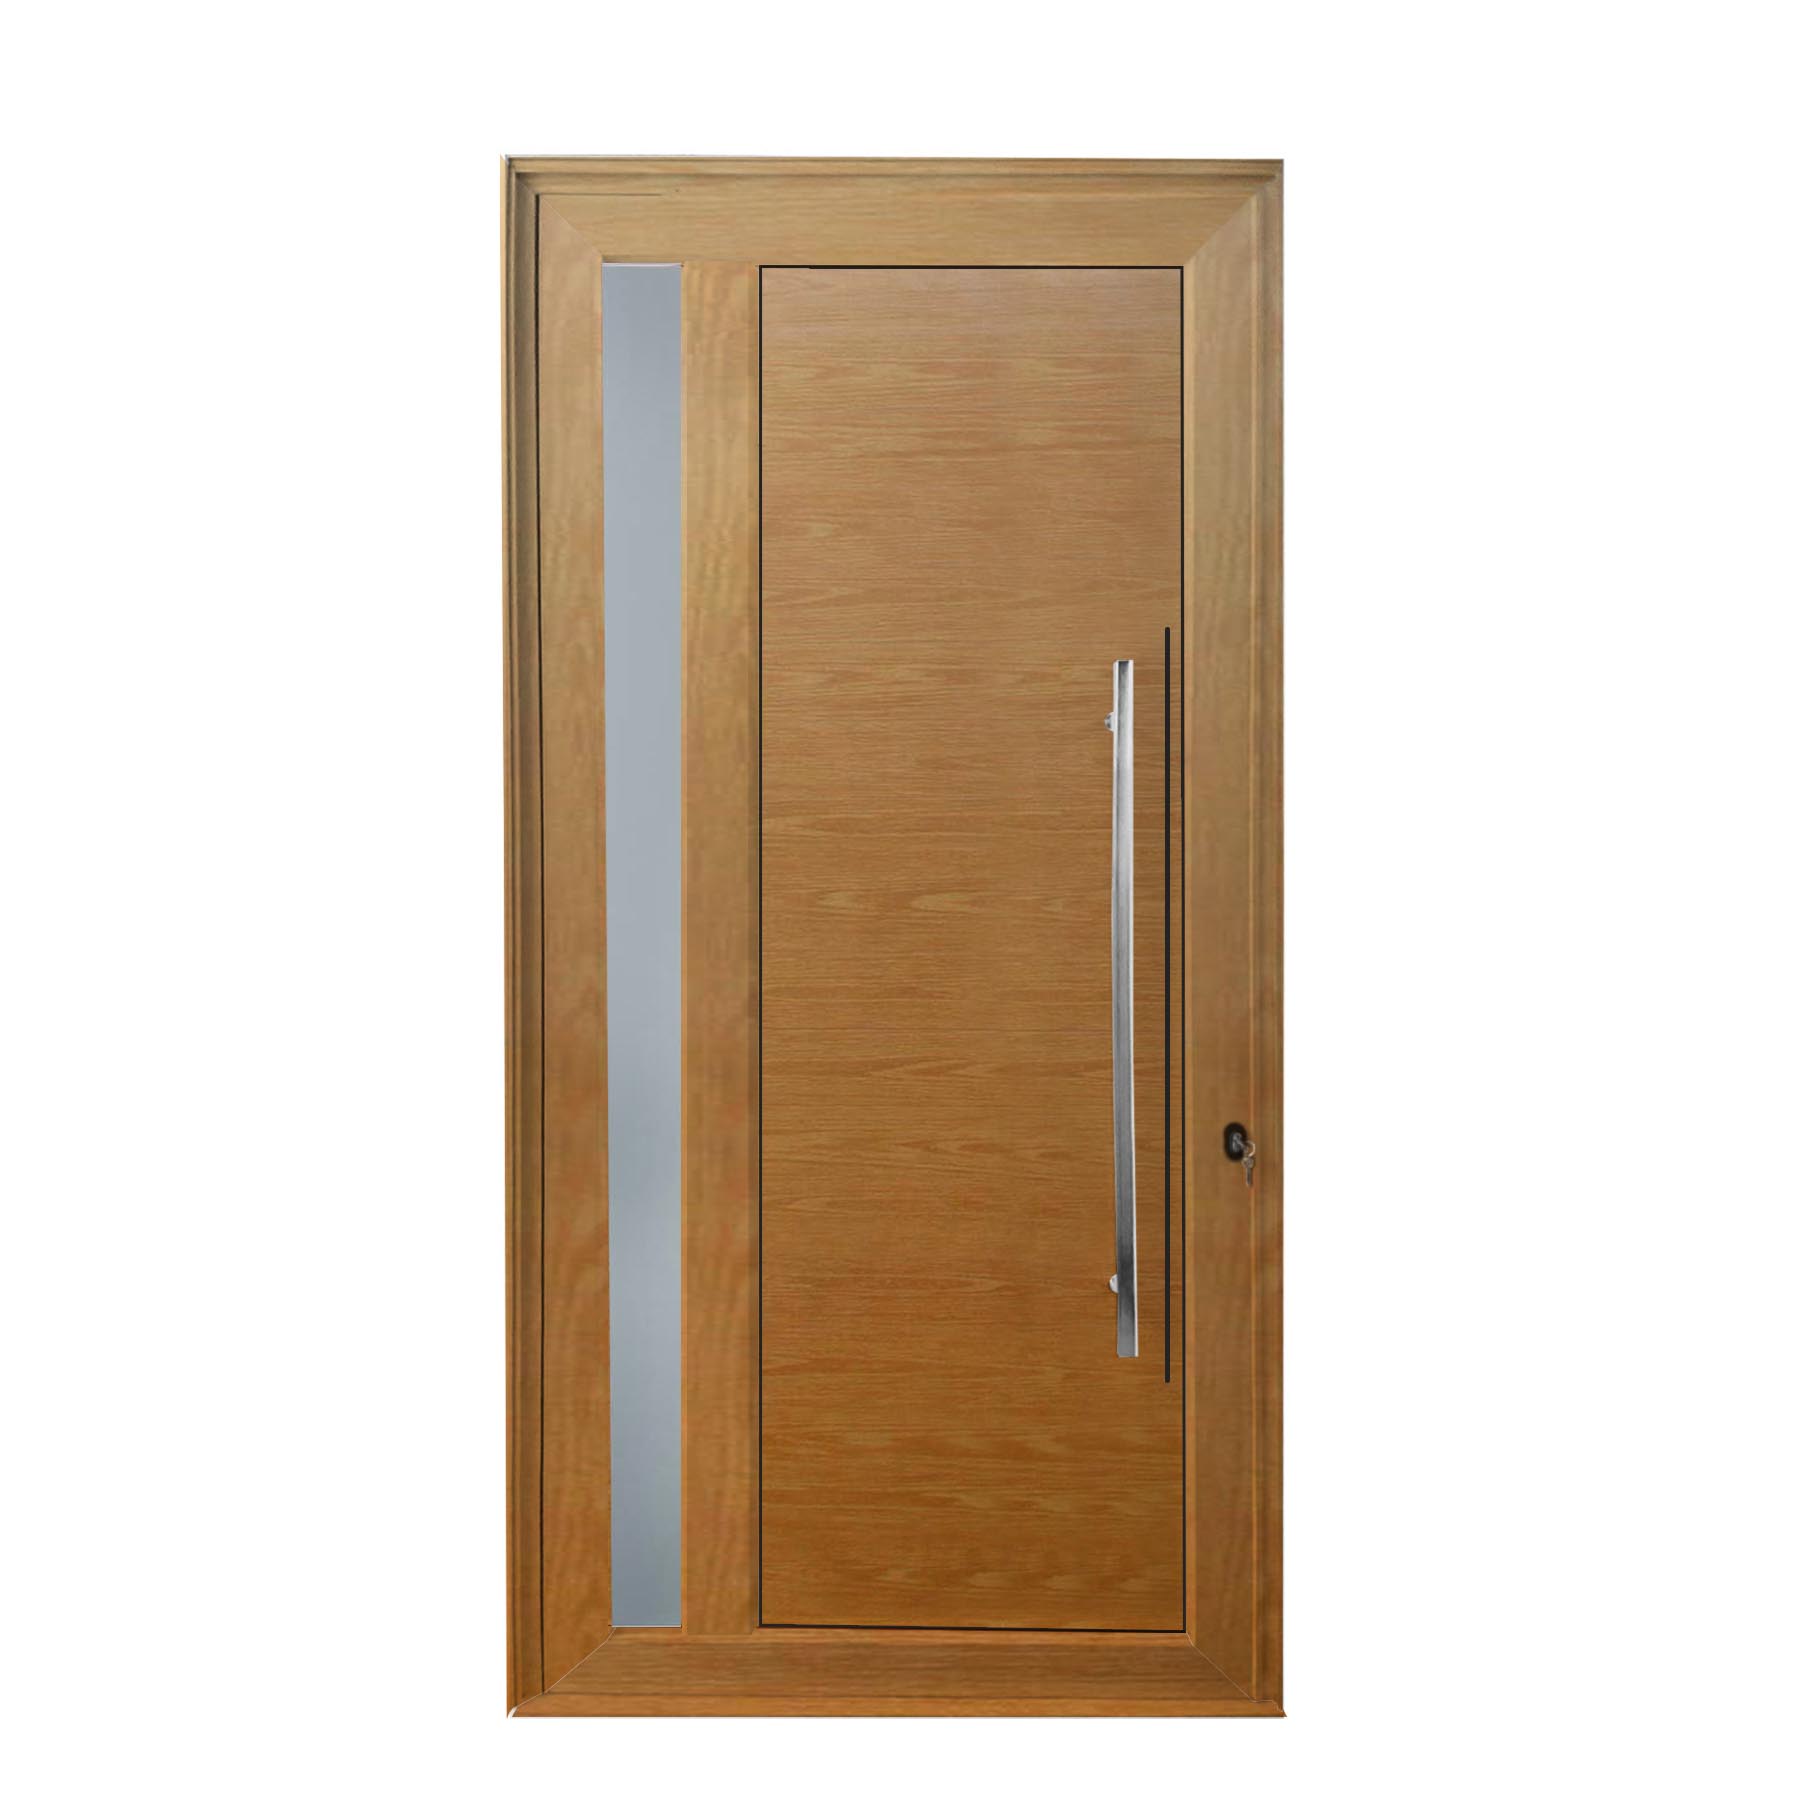 Porta de abrir 1 folha lambri cor madeira com vidro 98 x 215 com puxador inox de 100cm - fechadura monoponto ( lado esquerdo) - Sociale